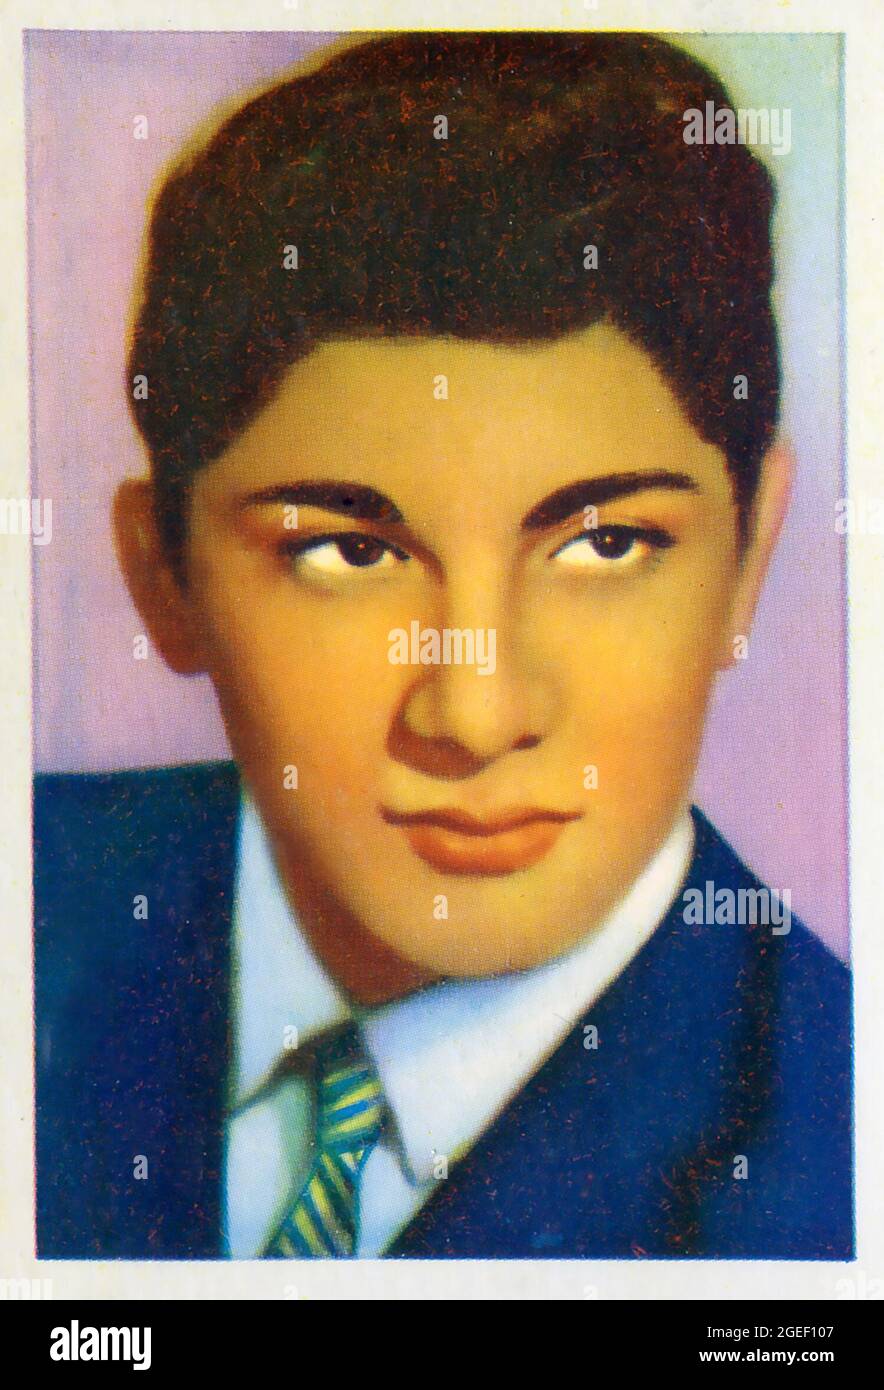 La carta commerciale degli anni '60 raffigurante Paul Anka da un set intitolato Disc Stars è stata pubblicata da Kane Products Ltd. Di sussex, Inghilterra. Foto Stock